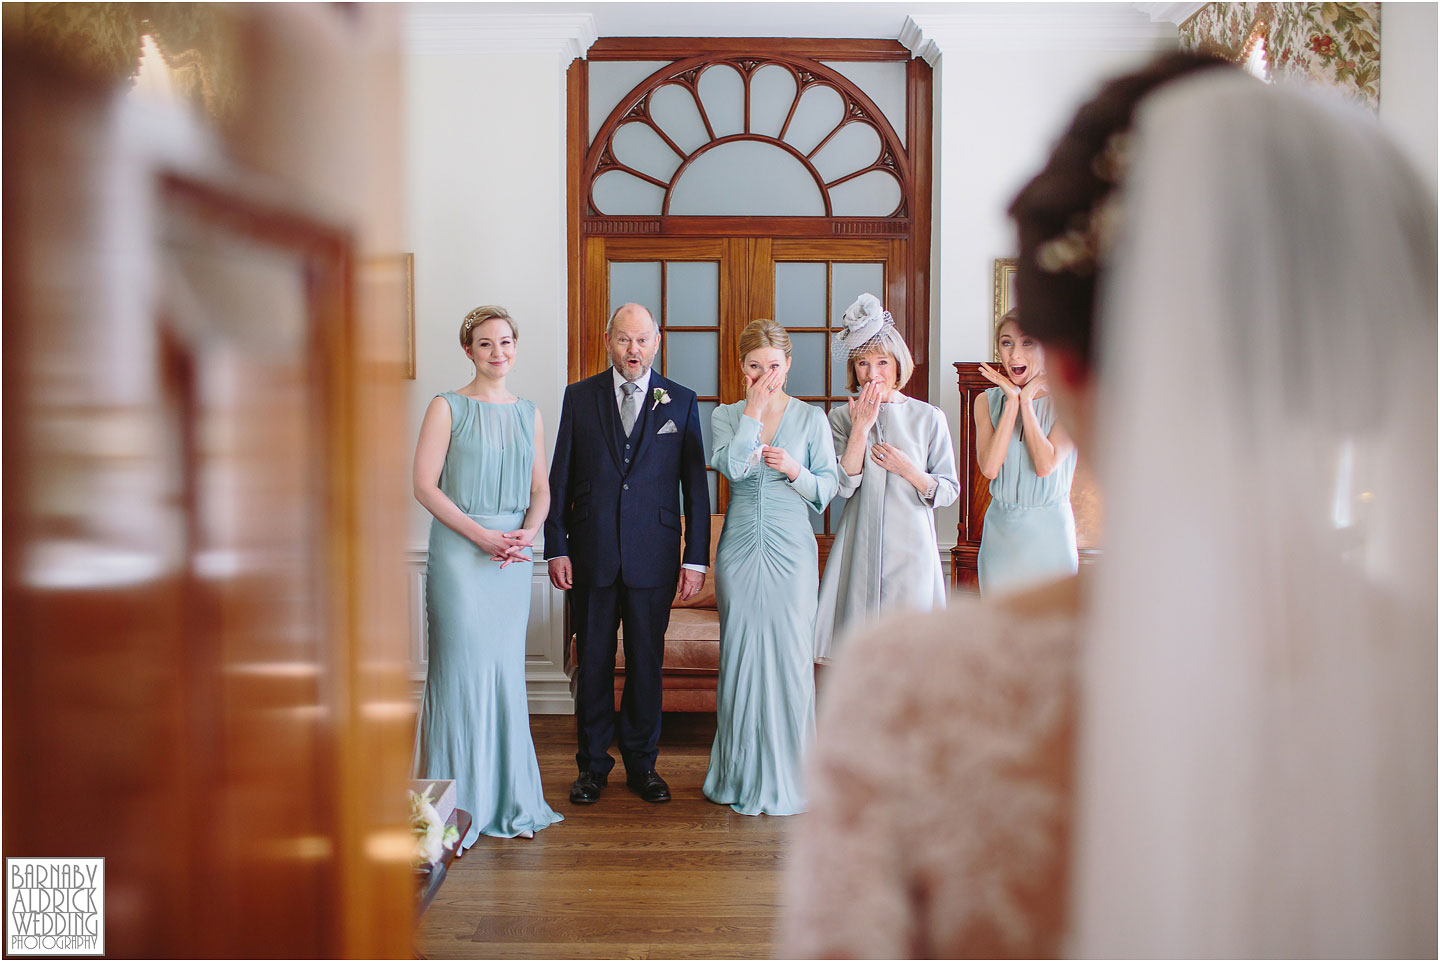 Bridal photo at Denton Hall near Ilkley, Amazing Yorkshire Wedding Photos, Best Yorkshire Wedding Photos 2018